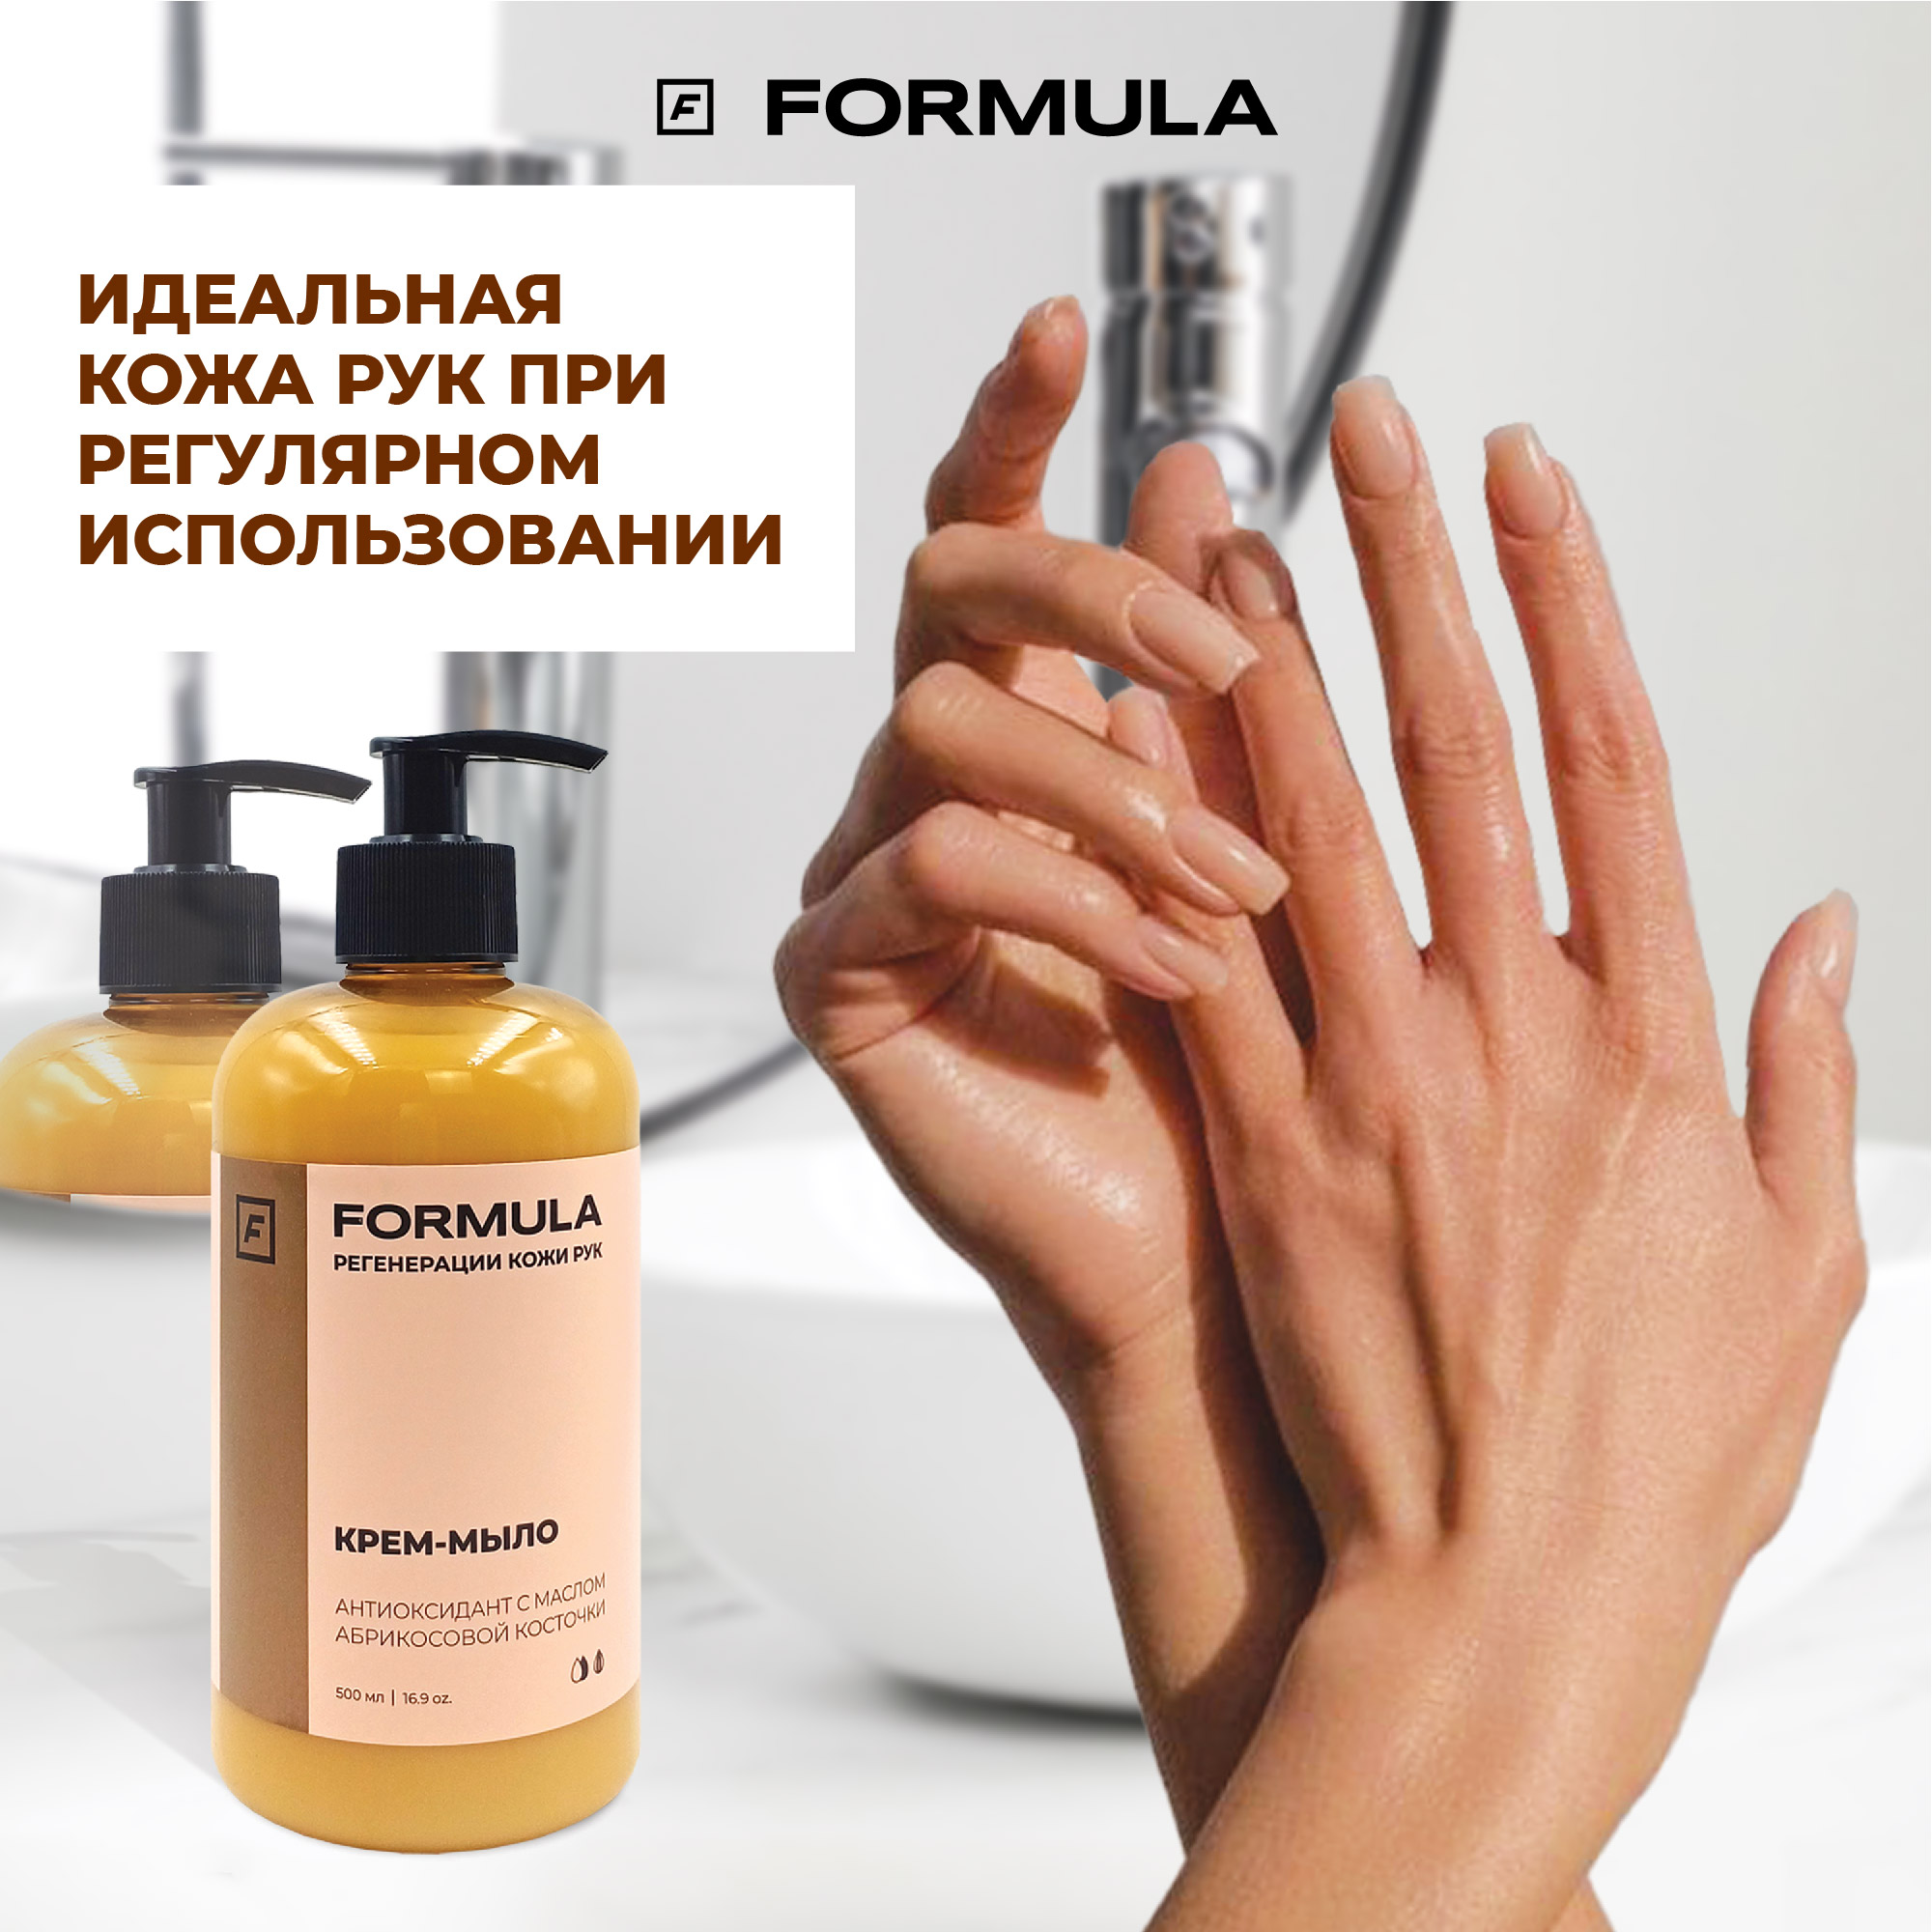 Крем-мыло F Formula антиоксидант с маслом абрикосовой косточки 500 мл - фото 5